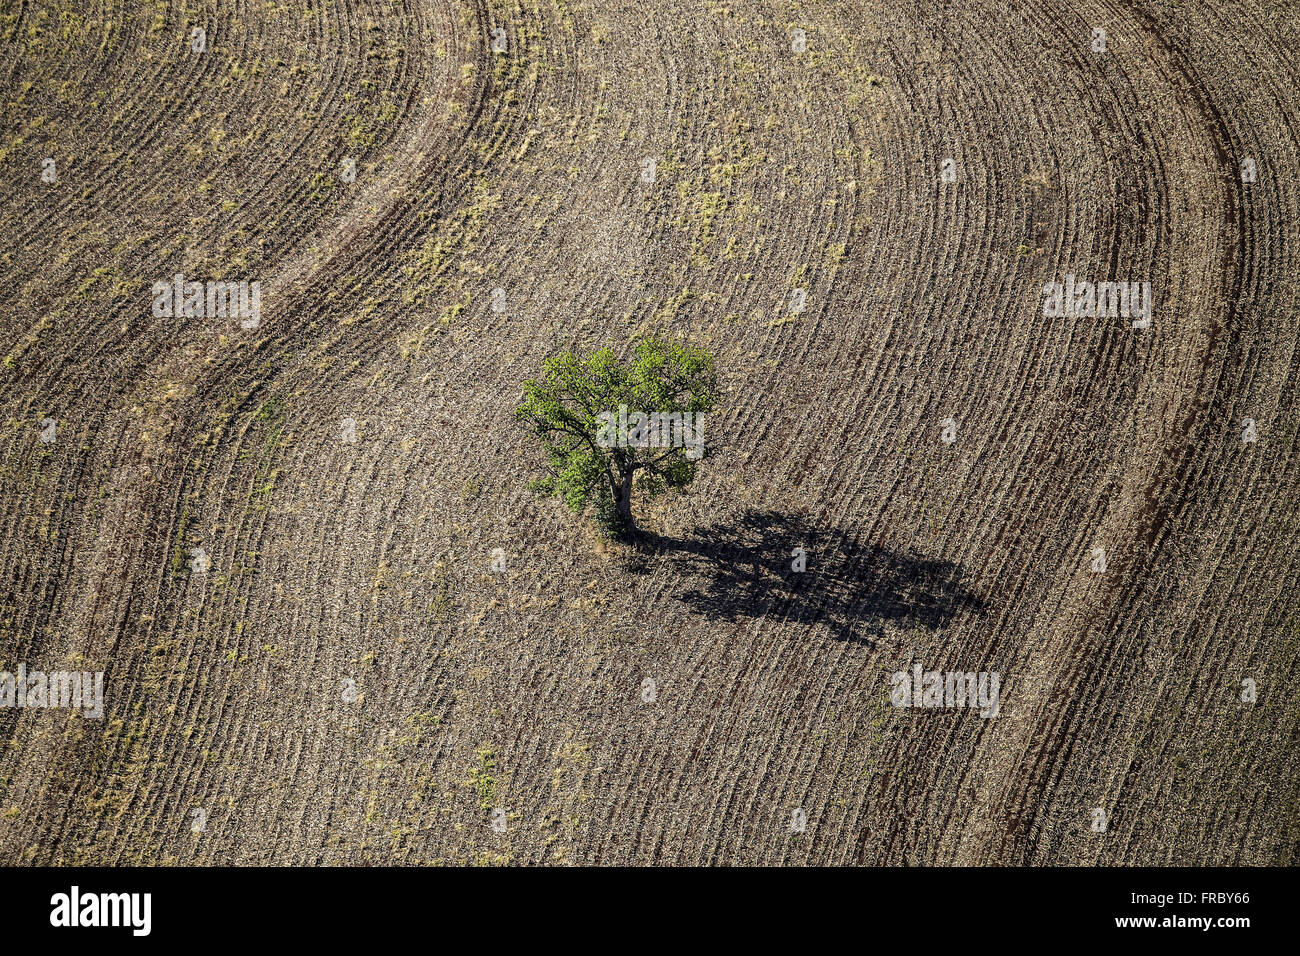 Vista aerea di albero isolato nelle colture raccolte di recente Foto Stock